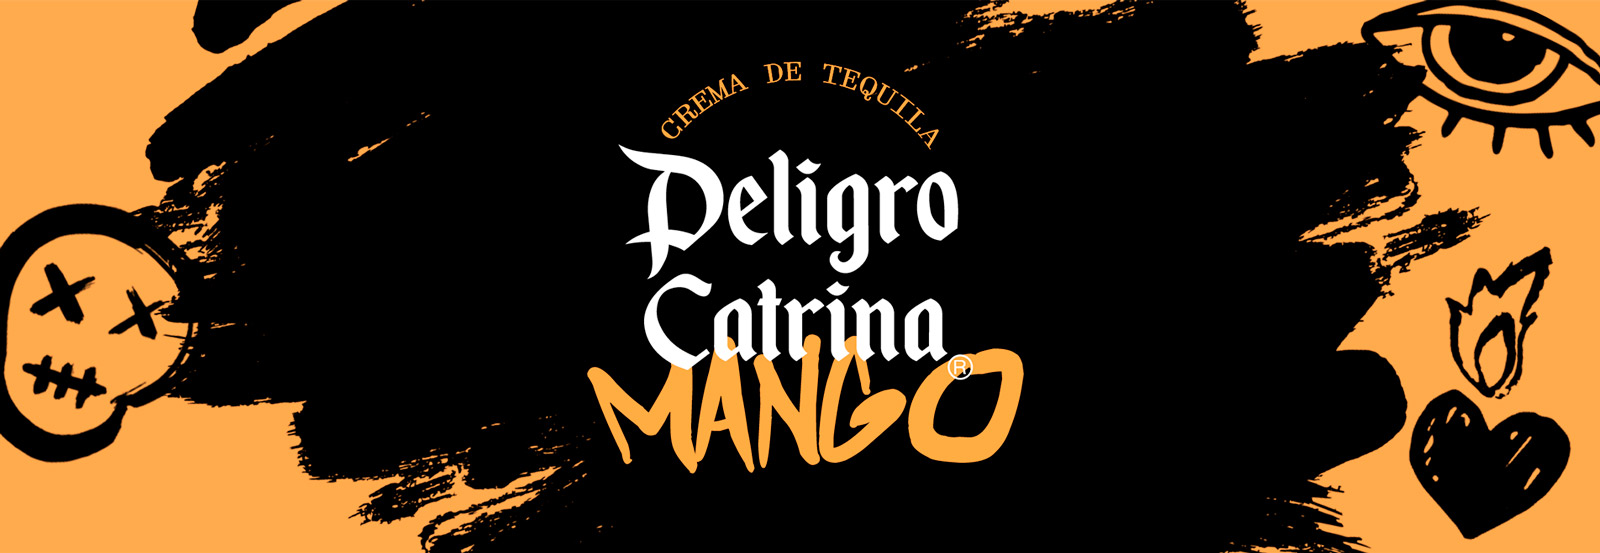 Crema De Tequila Sabor Mango | Andalusí Destilerías